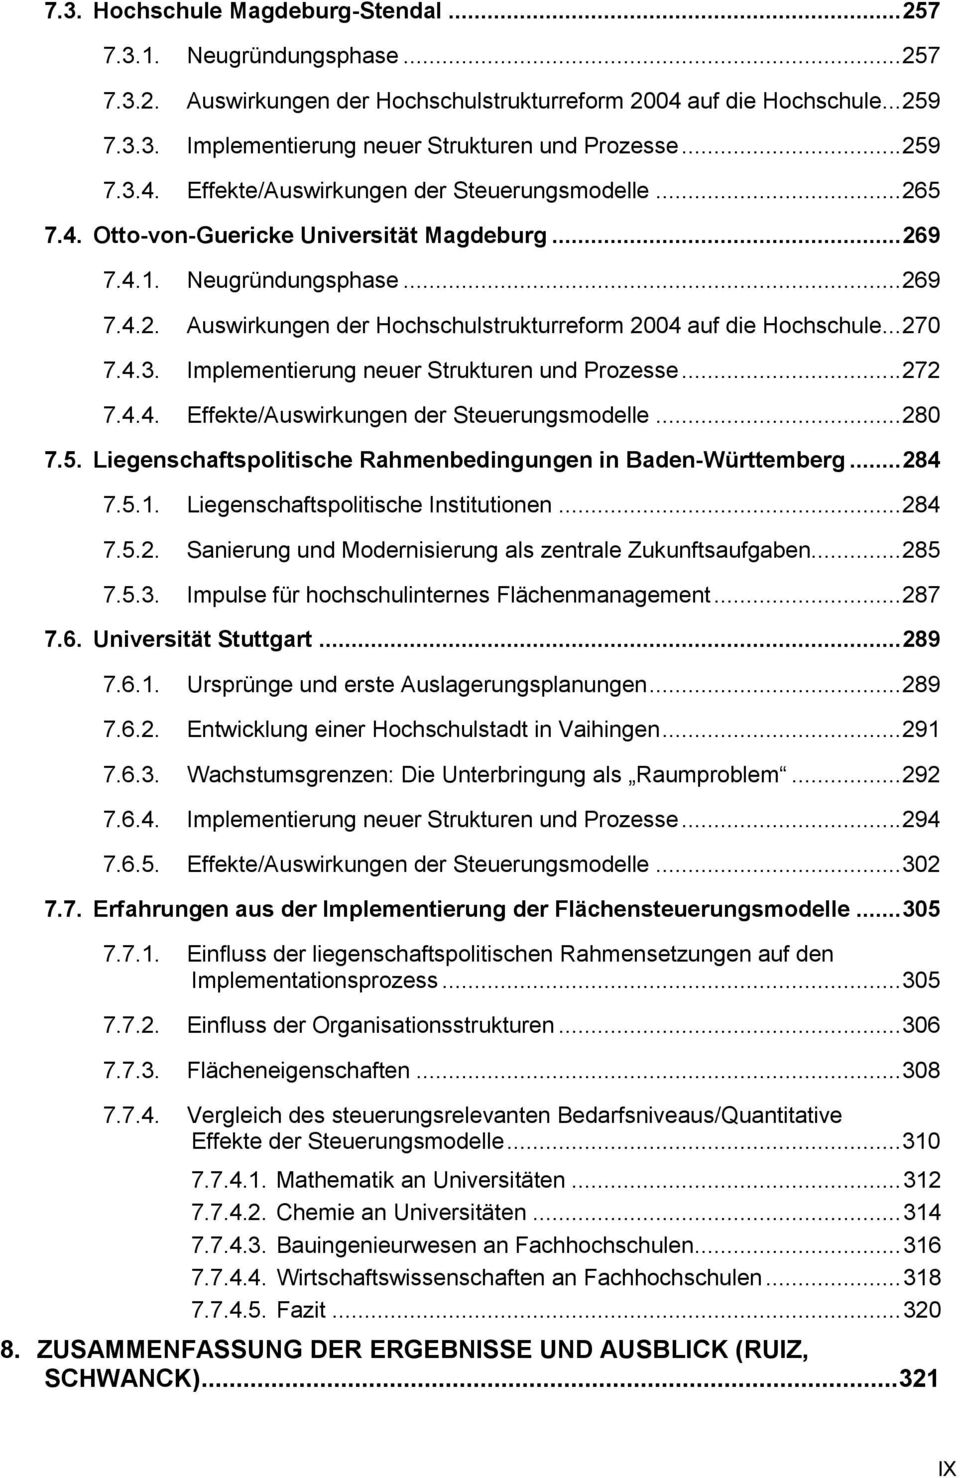 .. 270 7.4.3. Implementierung neuer Strukturen und Prozesse... 272 7.4.4. Effekte/Auswirkungen der Steuerungsmodelle... 280 7.5. Liegenschaftspolitische Rahmenbedingungen in Baden-Württemberg... 284 7.